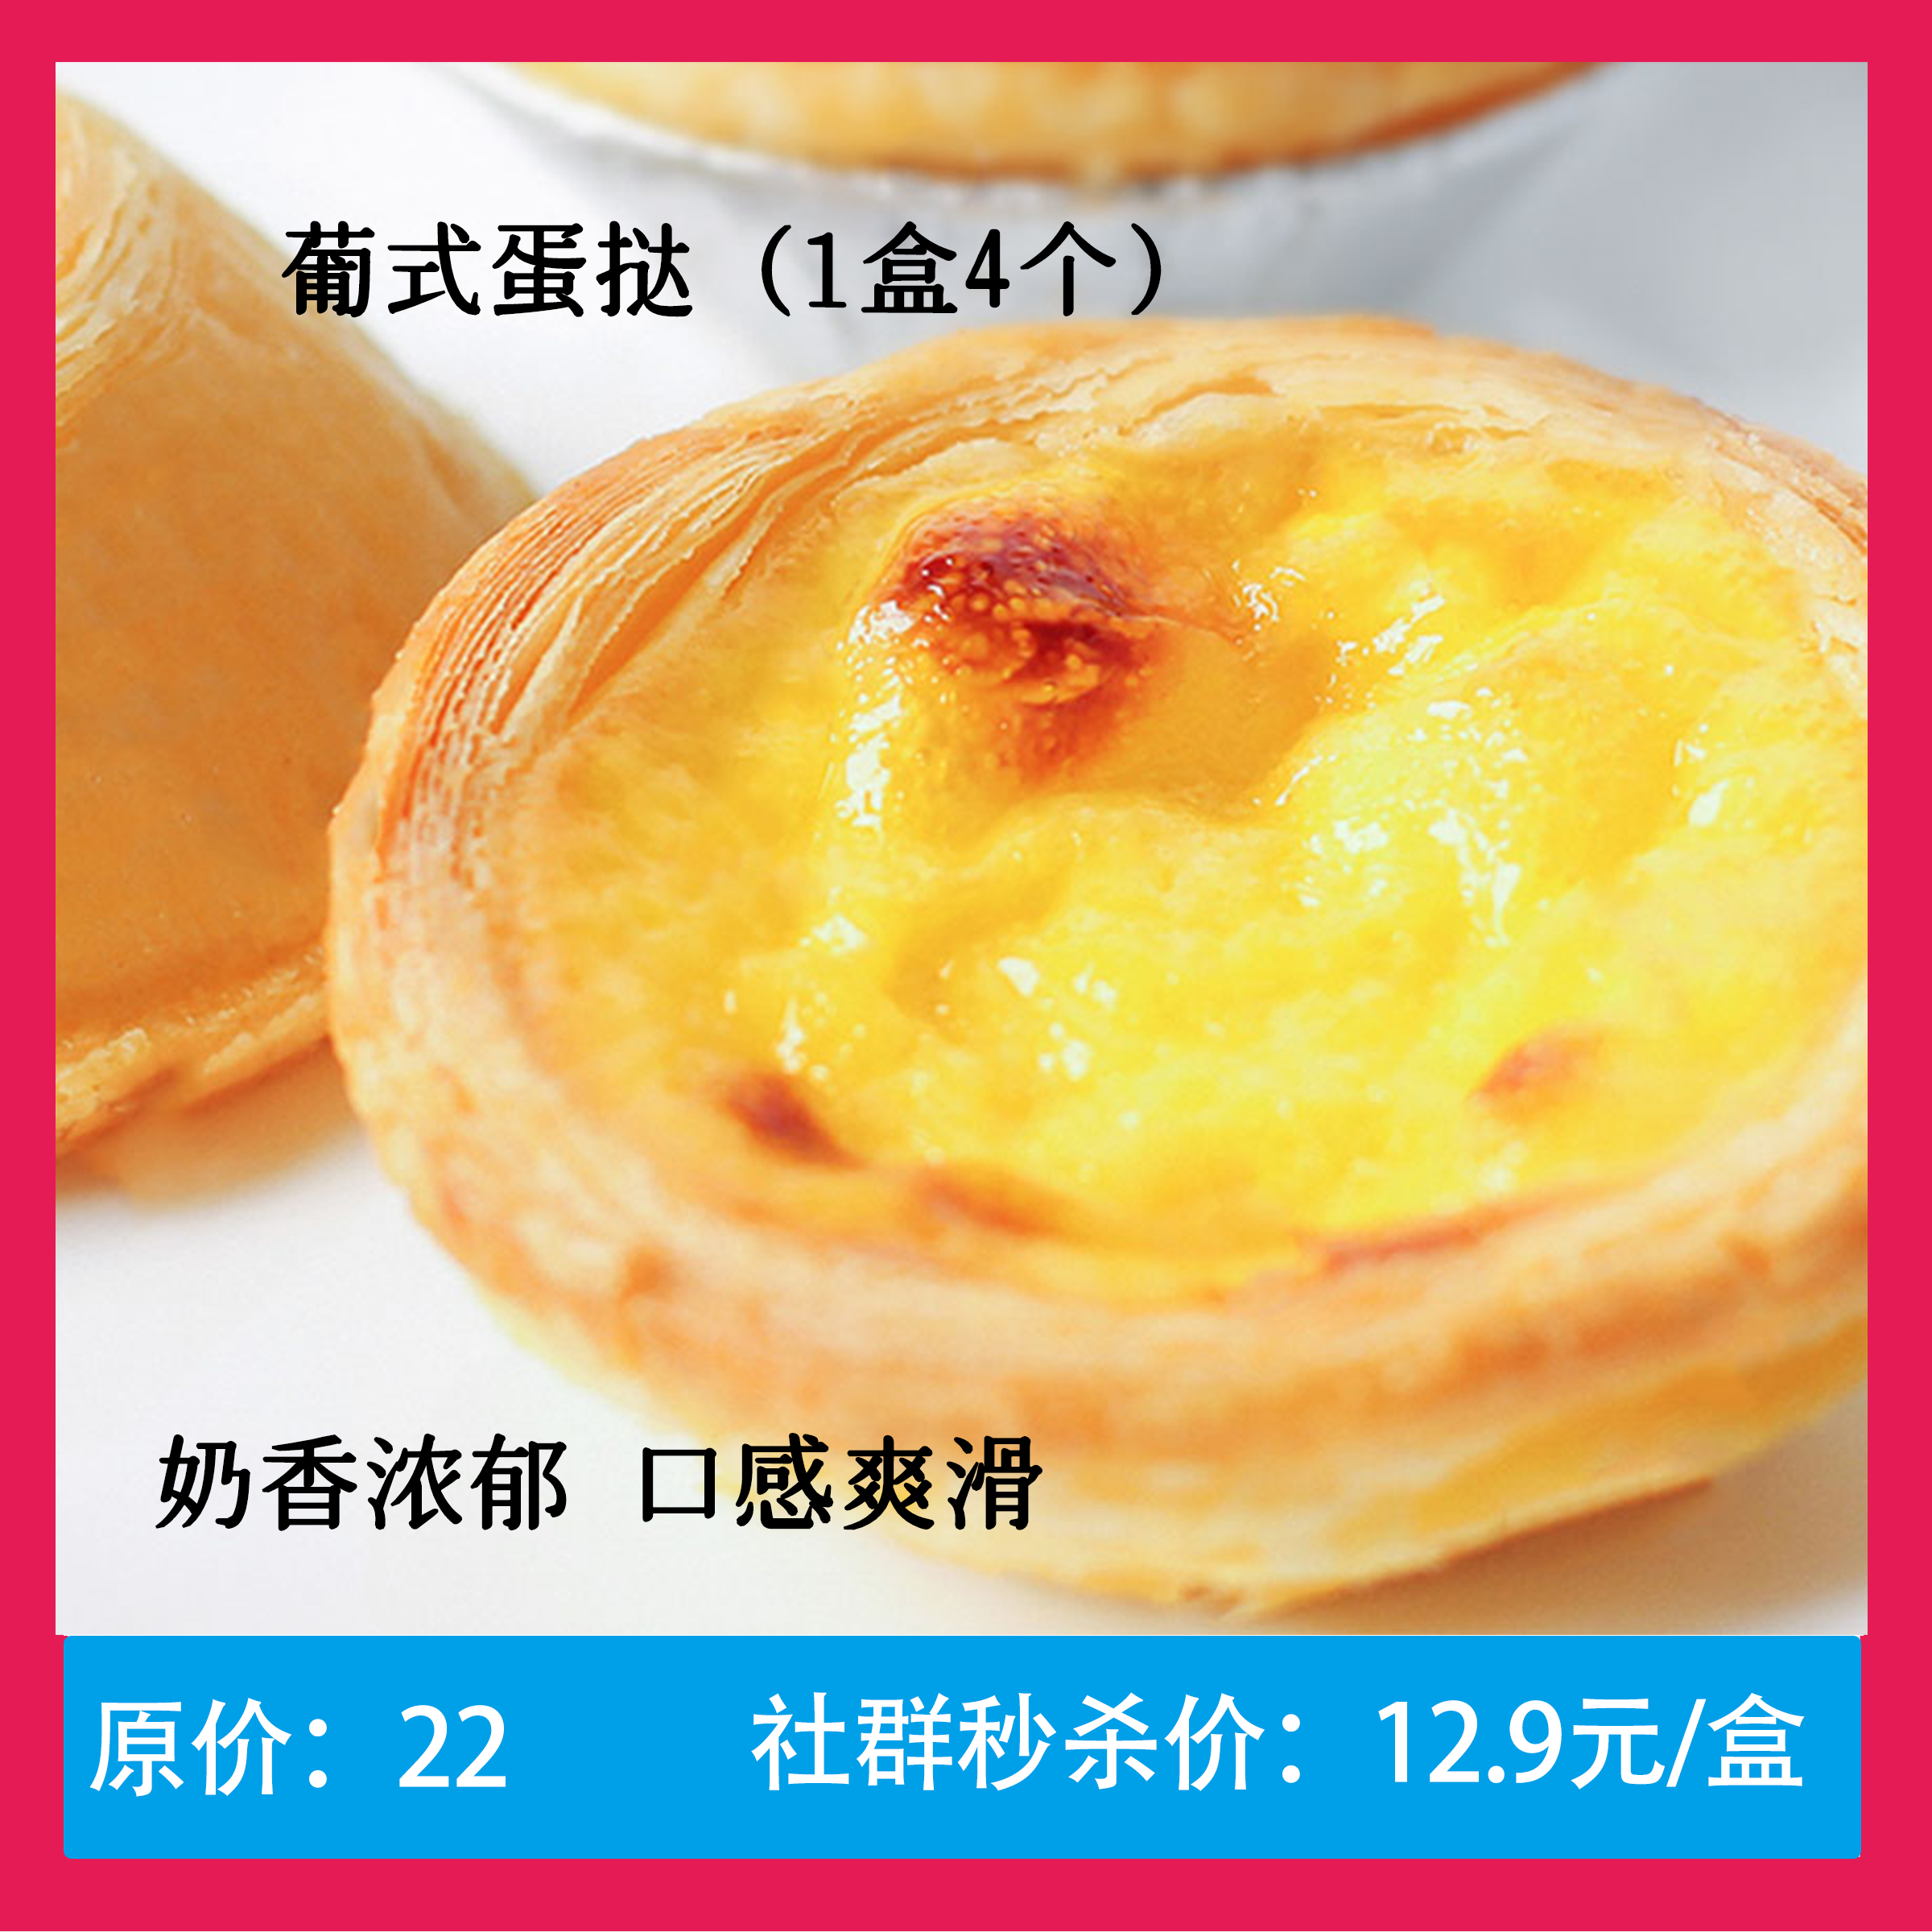 【12.9元秒】葡式蛋挞1盒